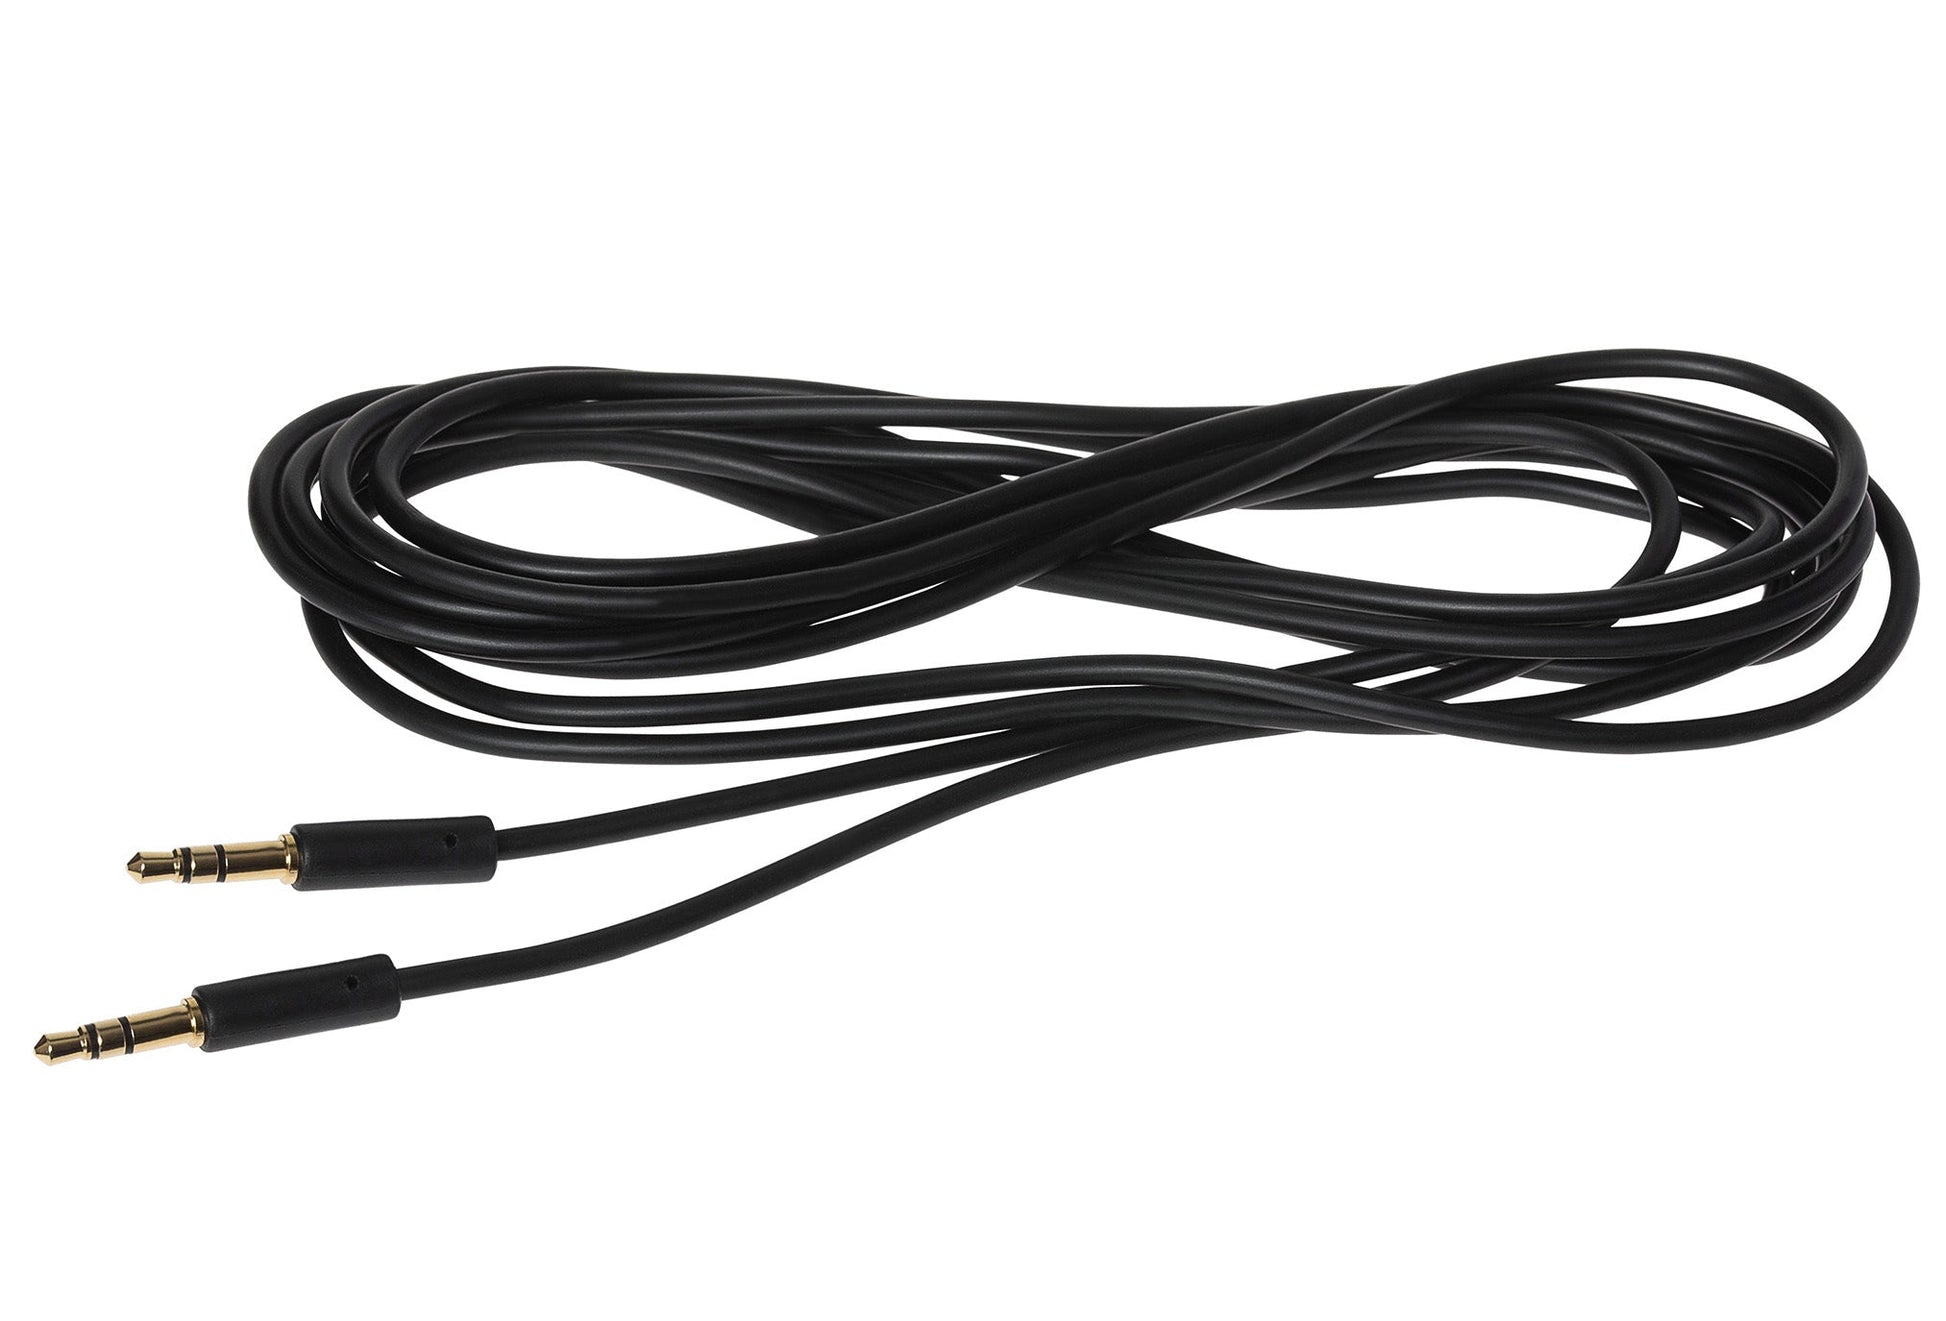 Maplin 3.5mm Aux Stereo 3-Pole Jack Plug to 3.5mm 3-Pole Jack Plug Cable - Black, 3m - maplin.co.uk